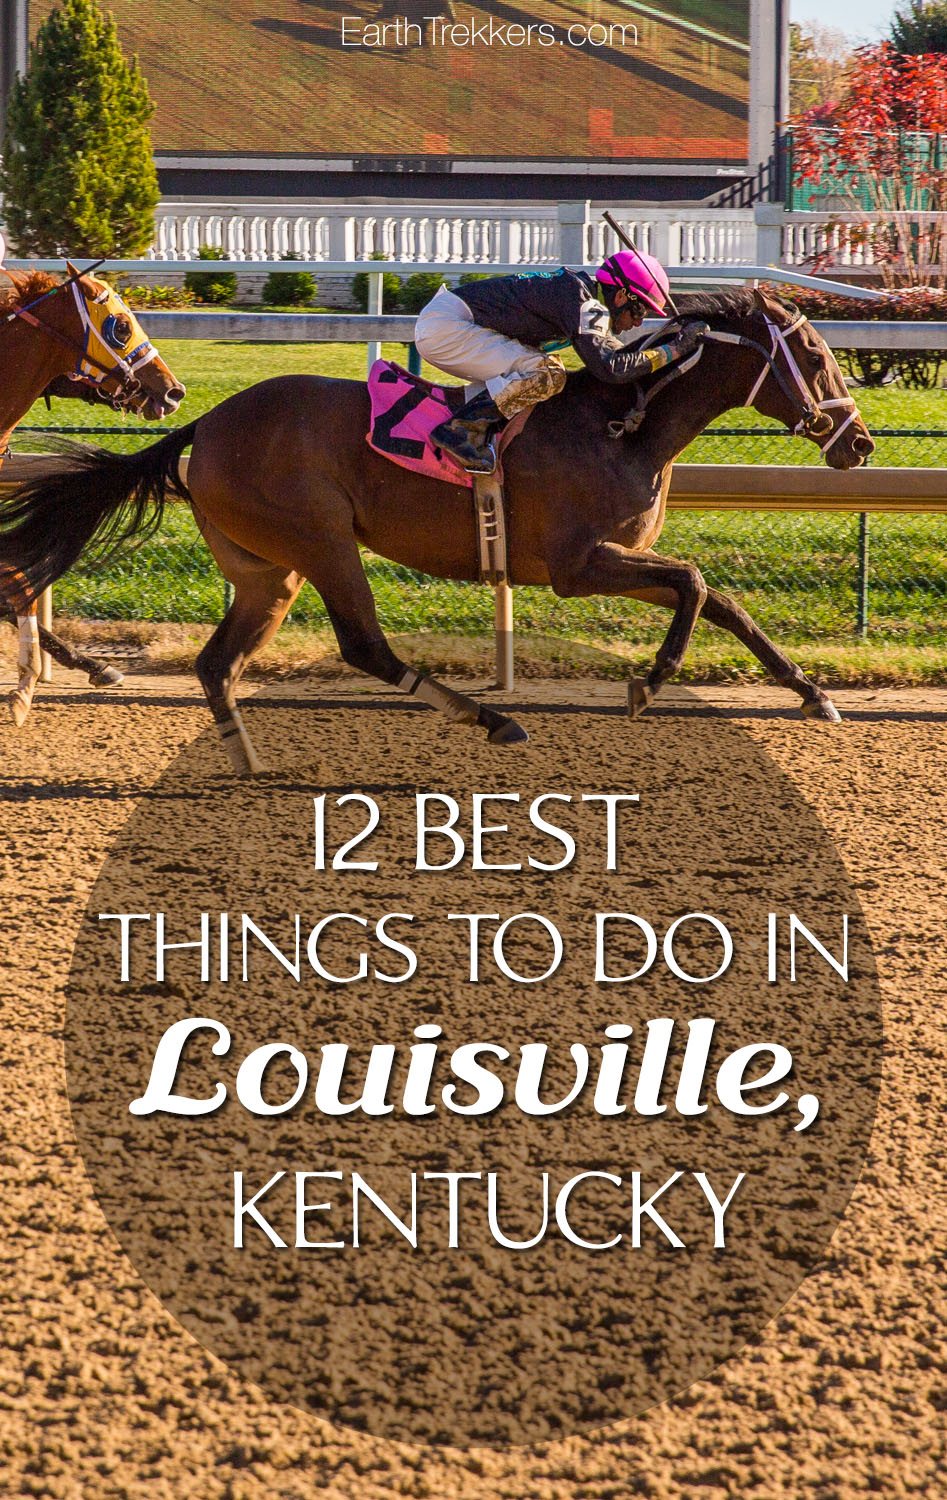 12 Best Things to do in Louisville, Kentucky | Earth Trekkers